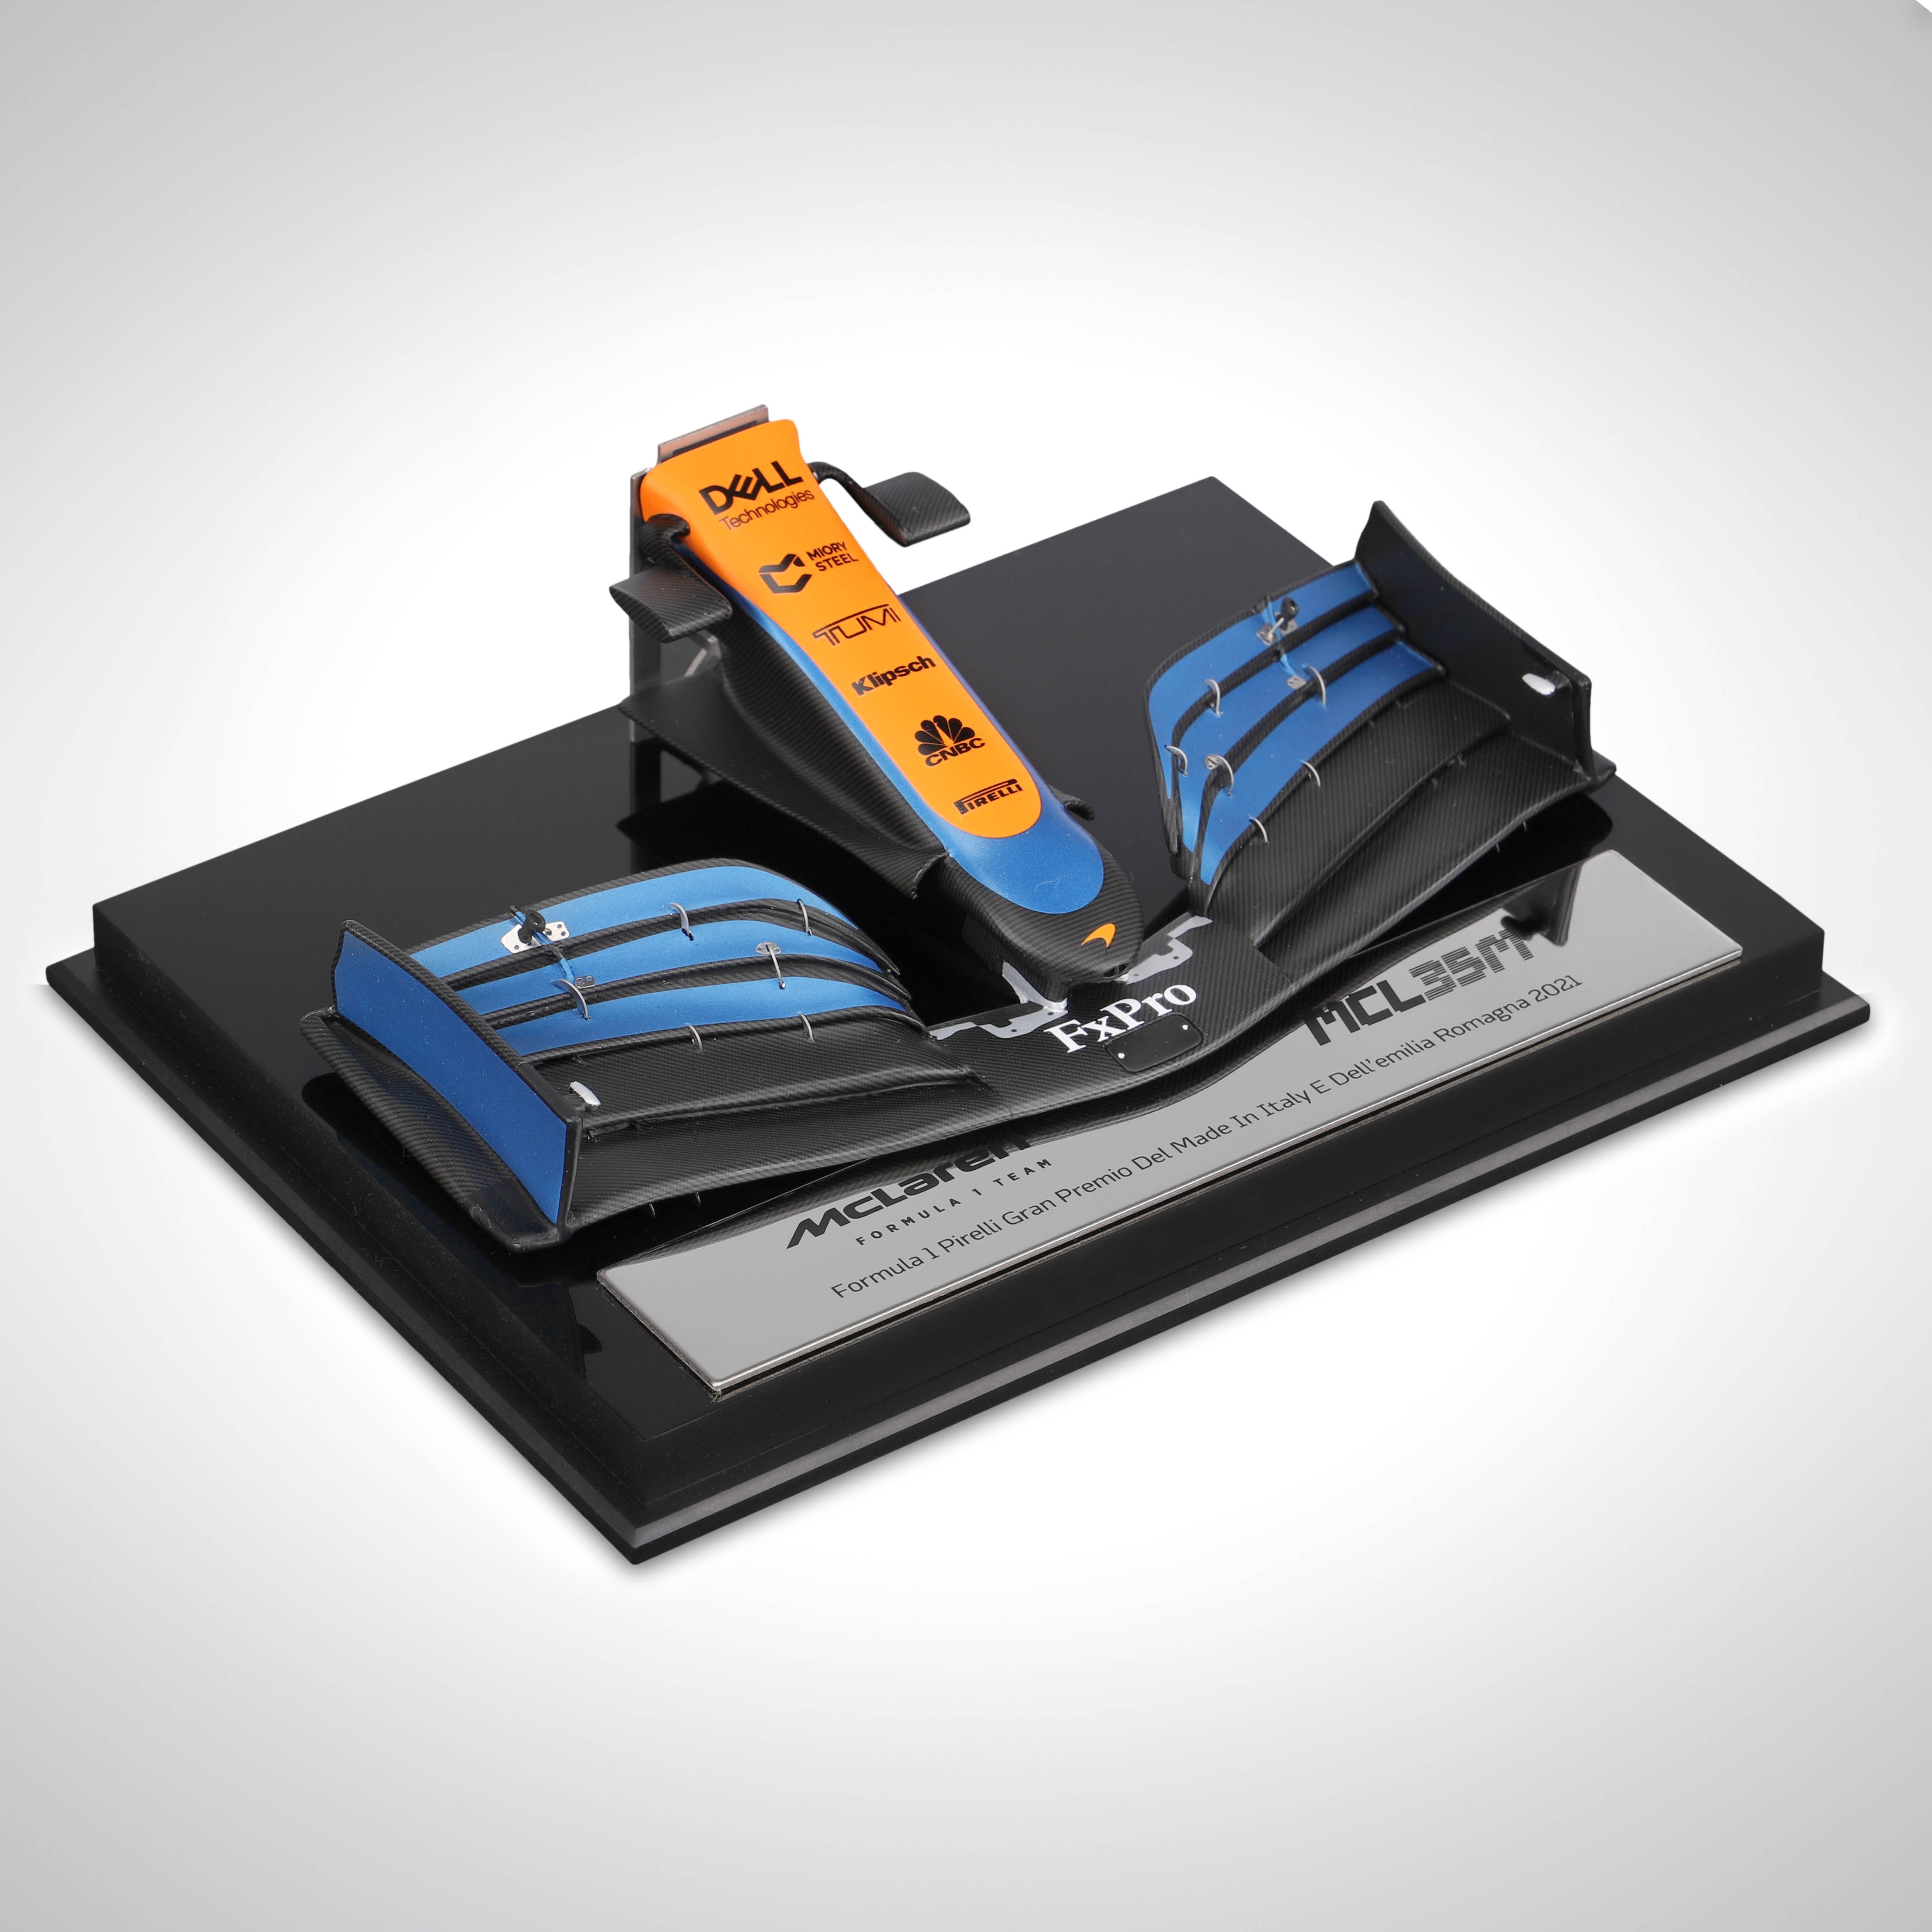 2021 McLaren F1 Team MCL35M Nosecone 1:12 Scale Model – Imola GP